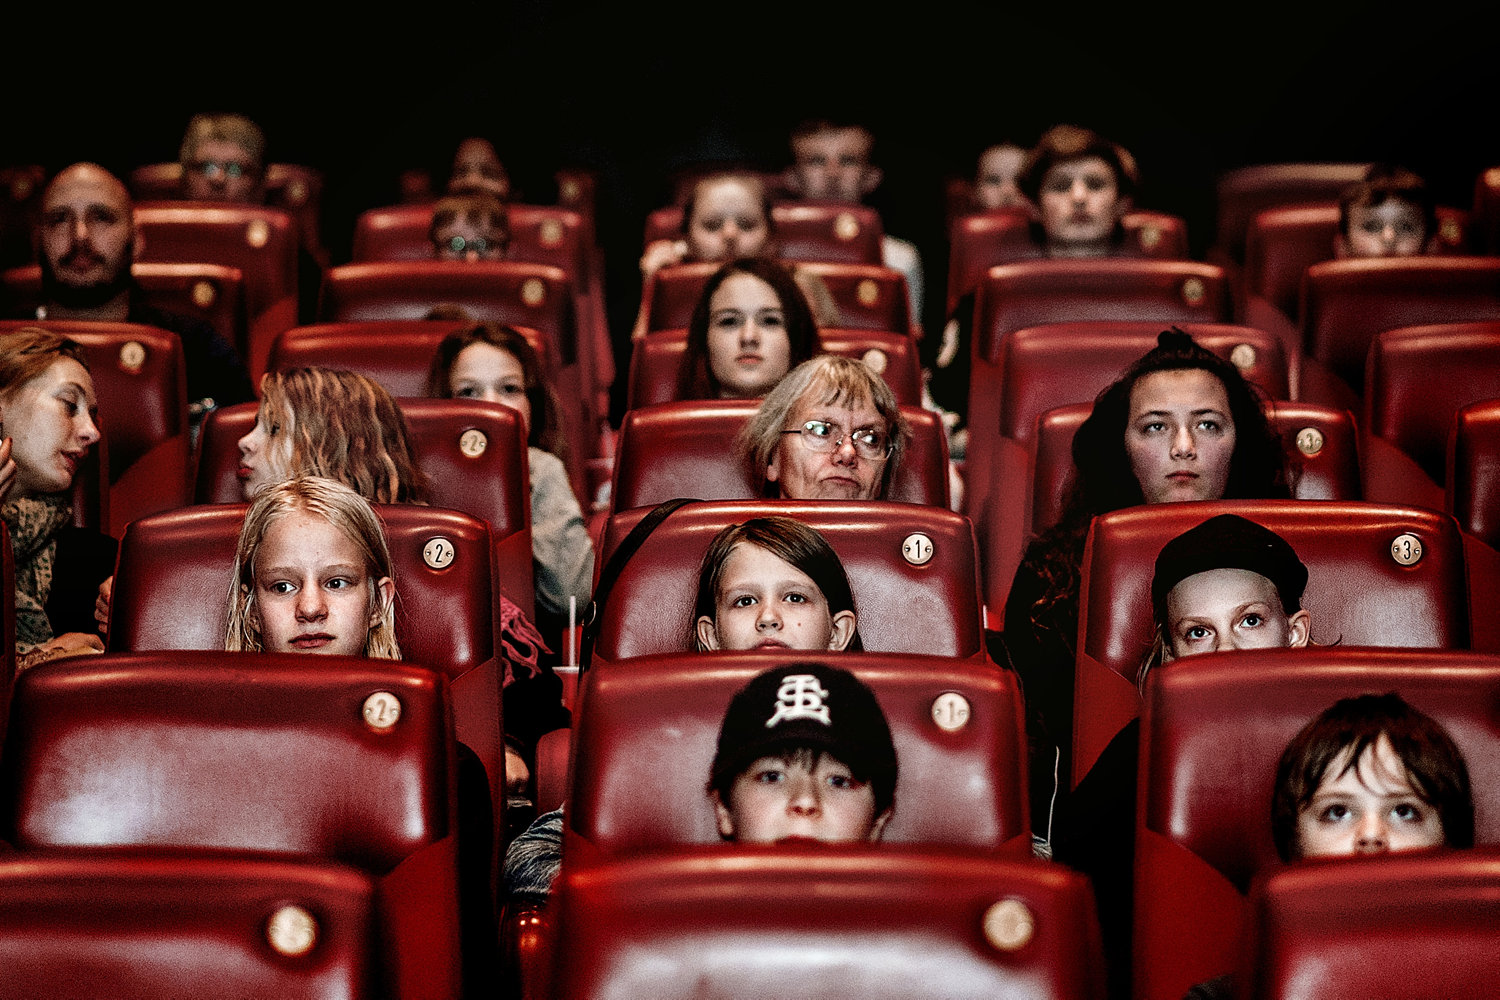 biografkæde vil lokke flere i biografen med abonnementsordning